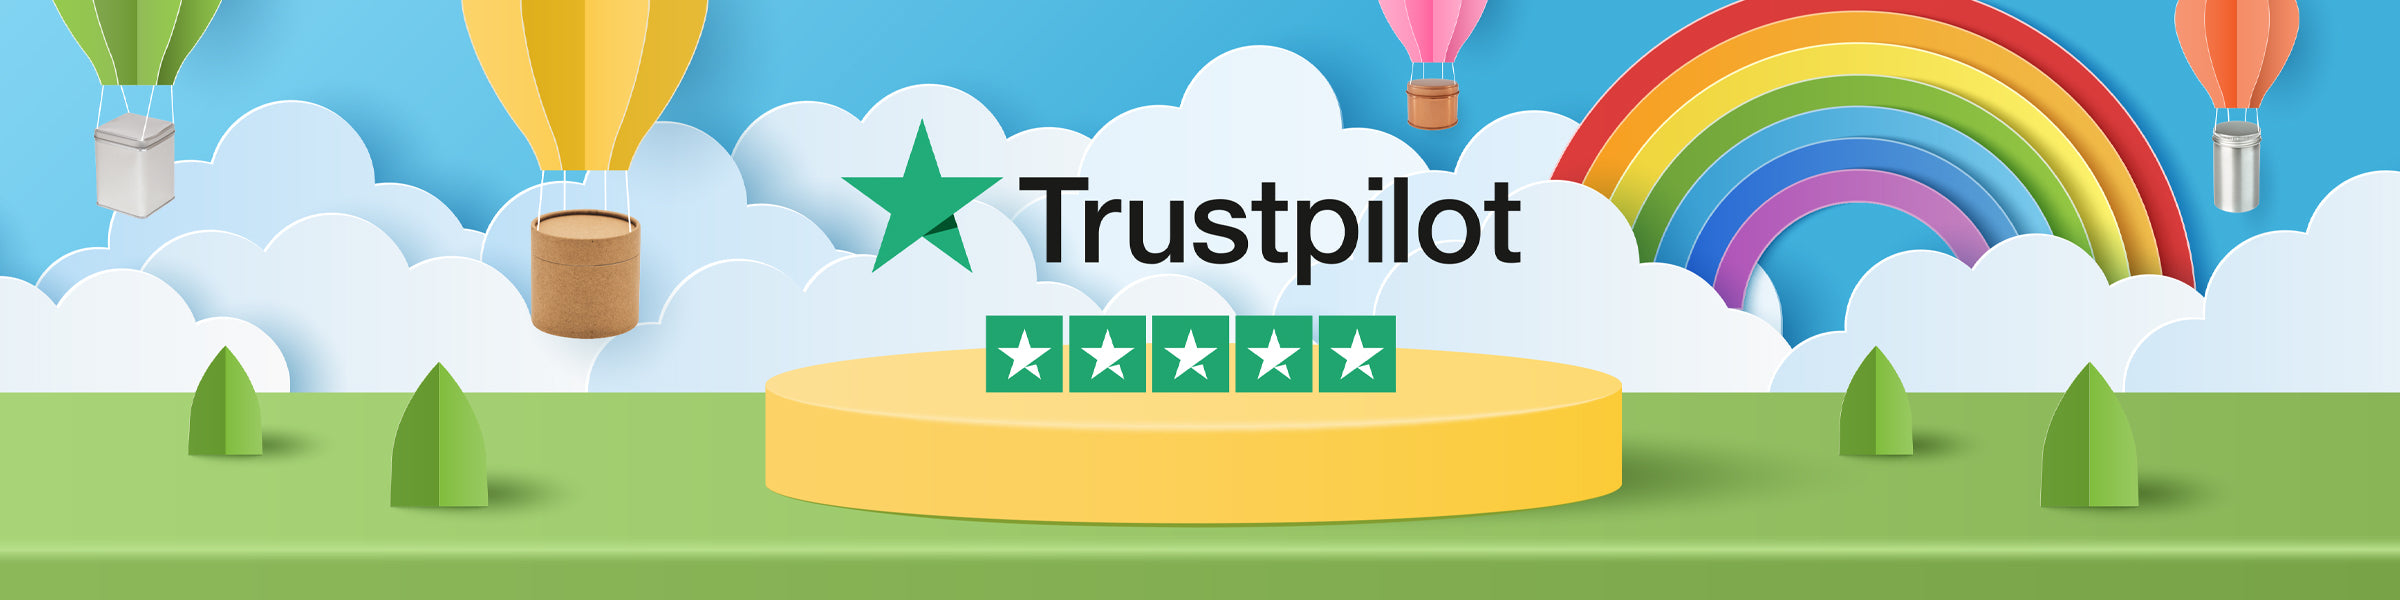 Logo cinque stelle Trustpilot circondato da barattoli e tubi in cartone, consegnati da una mongolfiera